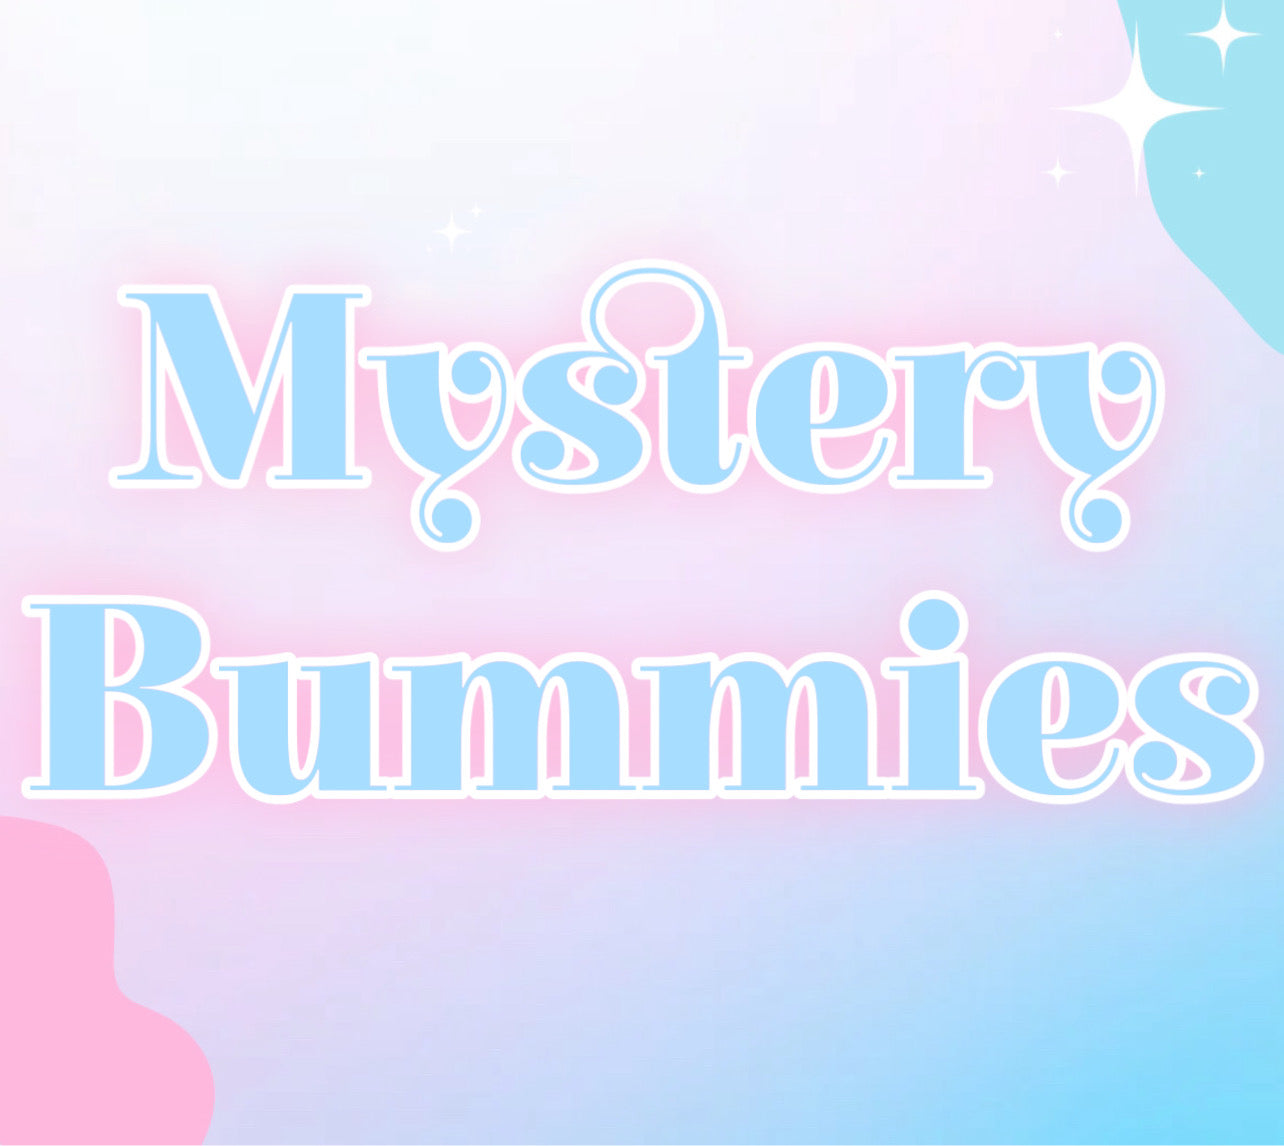 Mystery Bummies